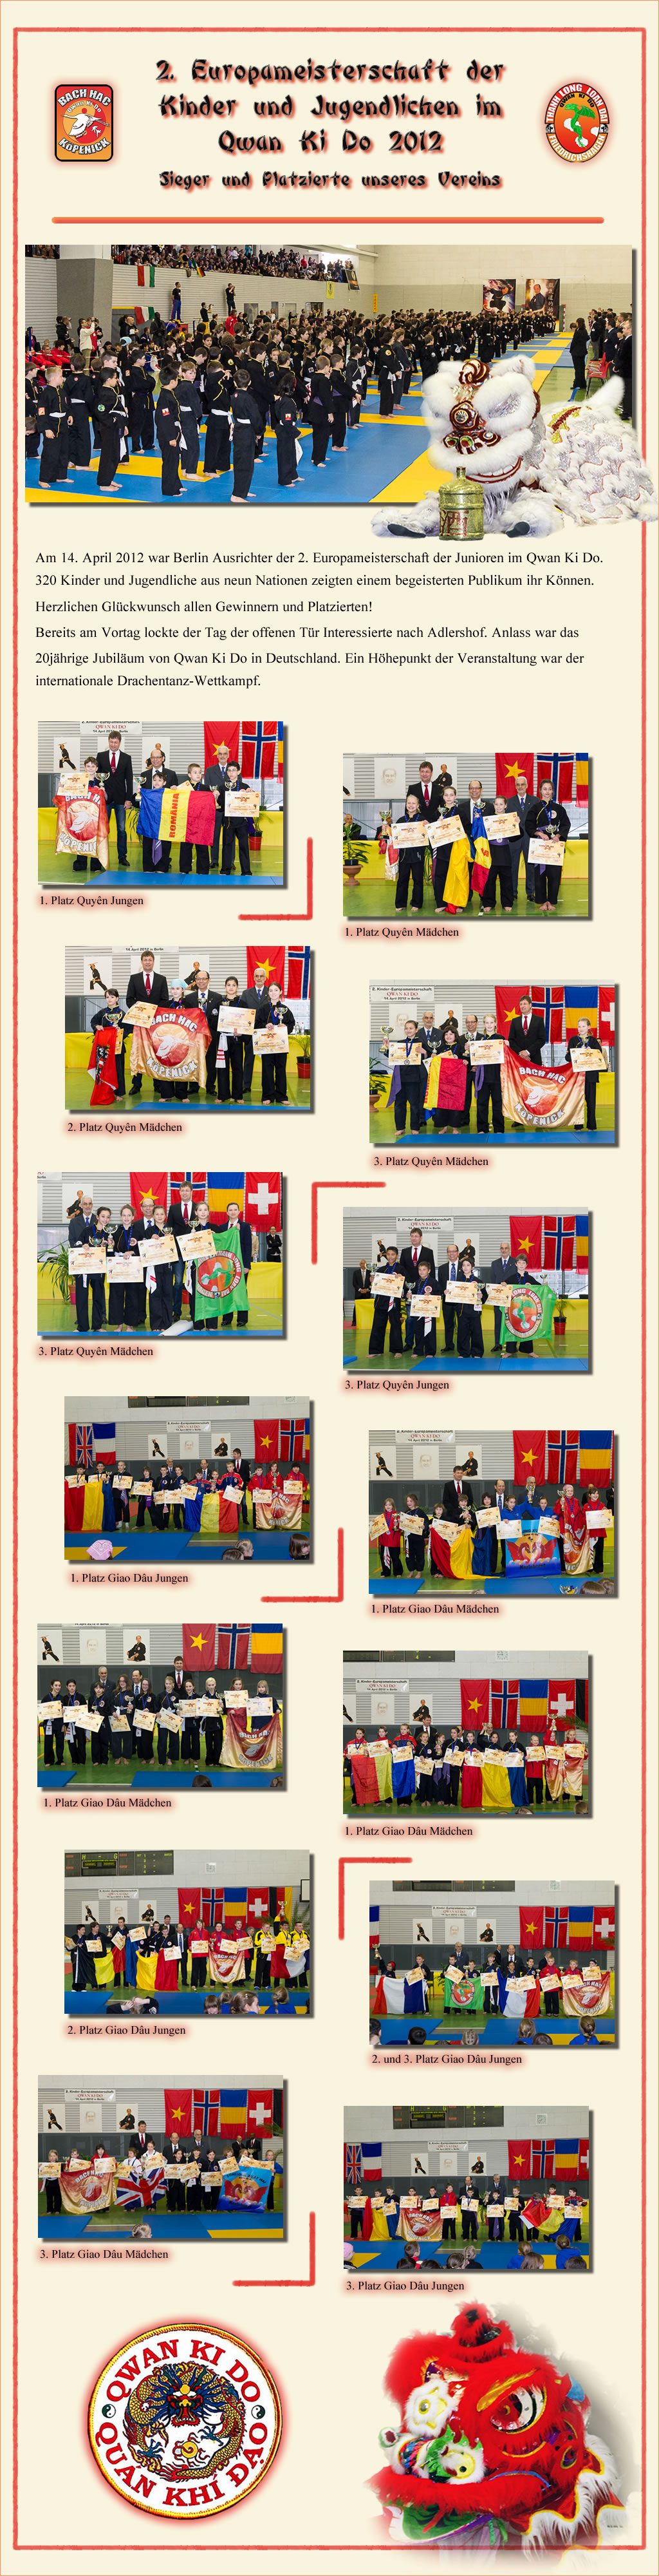 2012 ~ 2. Europäische Clubmeisterschaft der Junioren 2012 in Berlin